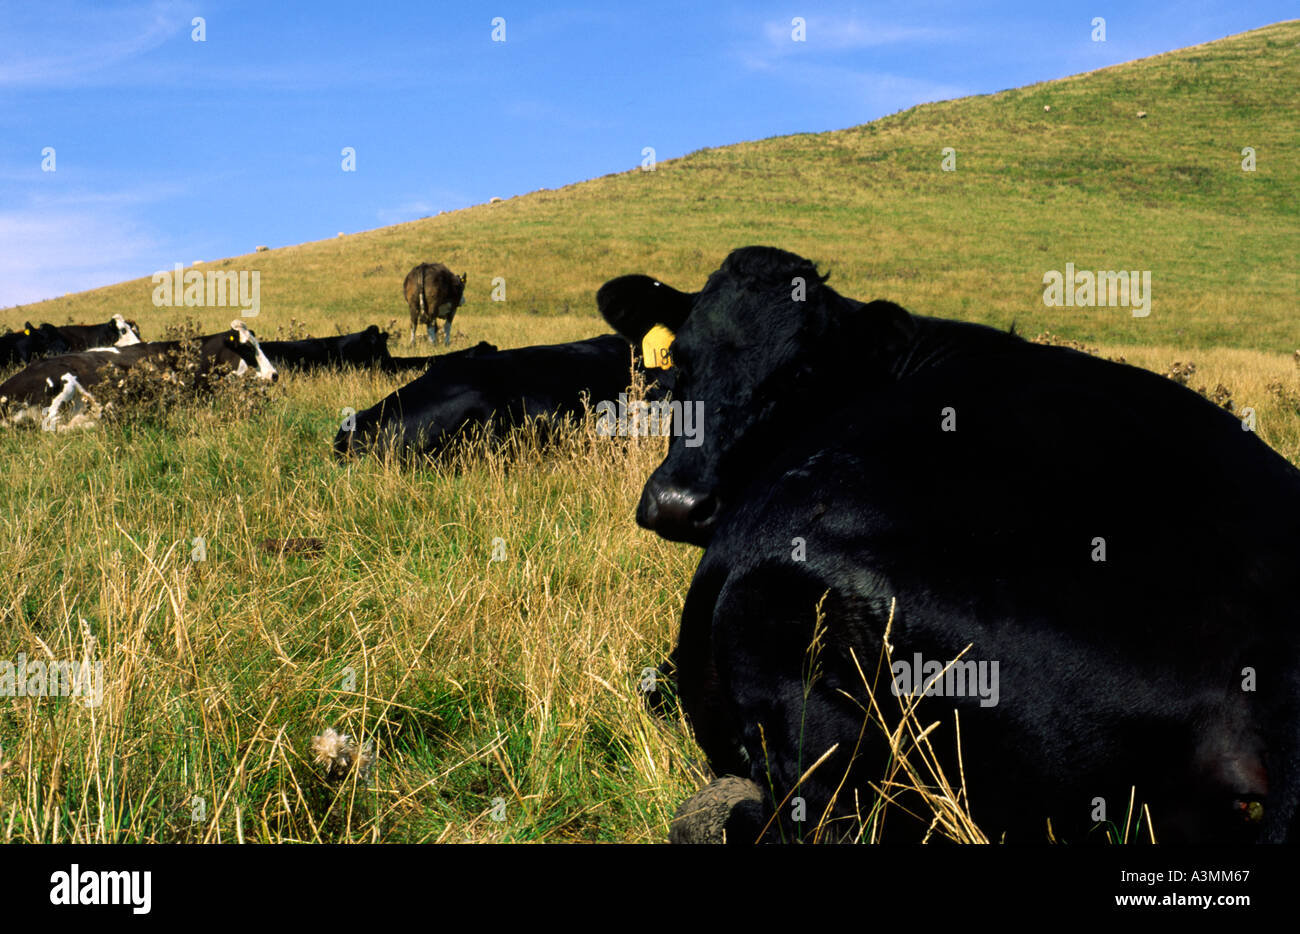 Les bovins de race Frisonne de mâcher de l'herbe dans un champ près de Worth Matravers Dorset dans le sud de l'Angleterre Banque D'Images